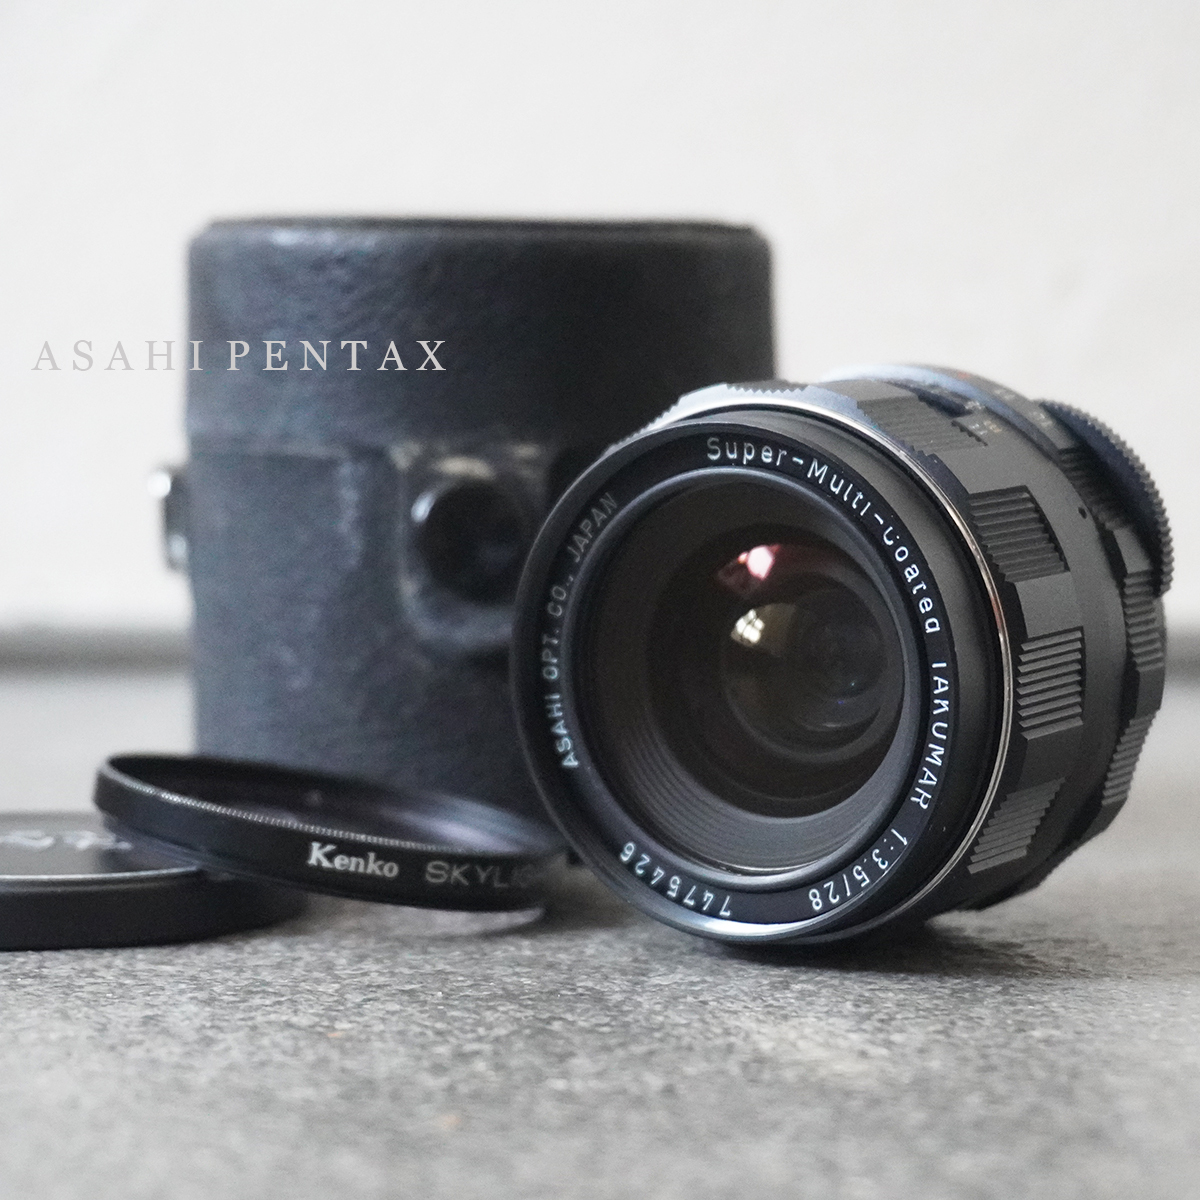 ほぼ 未使用 美品 アサヒ ペンタックス ASAHI PENTAX Super-Multi-Coated TAKUMAR F3.5 28mm 広角 単焦点 レンズ M42 マウント 一眼レフ_画像1